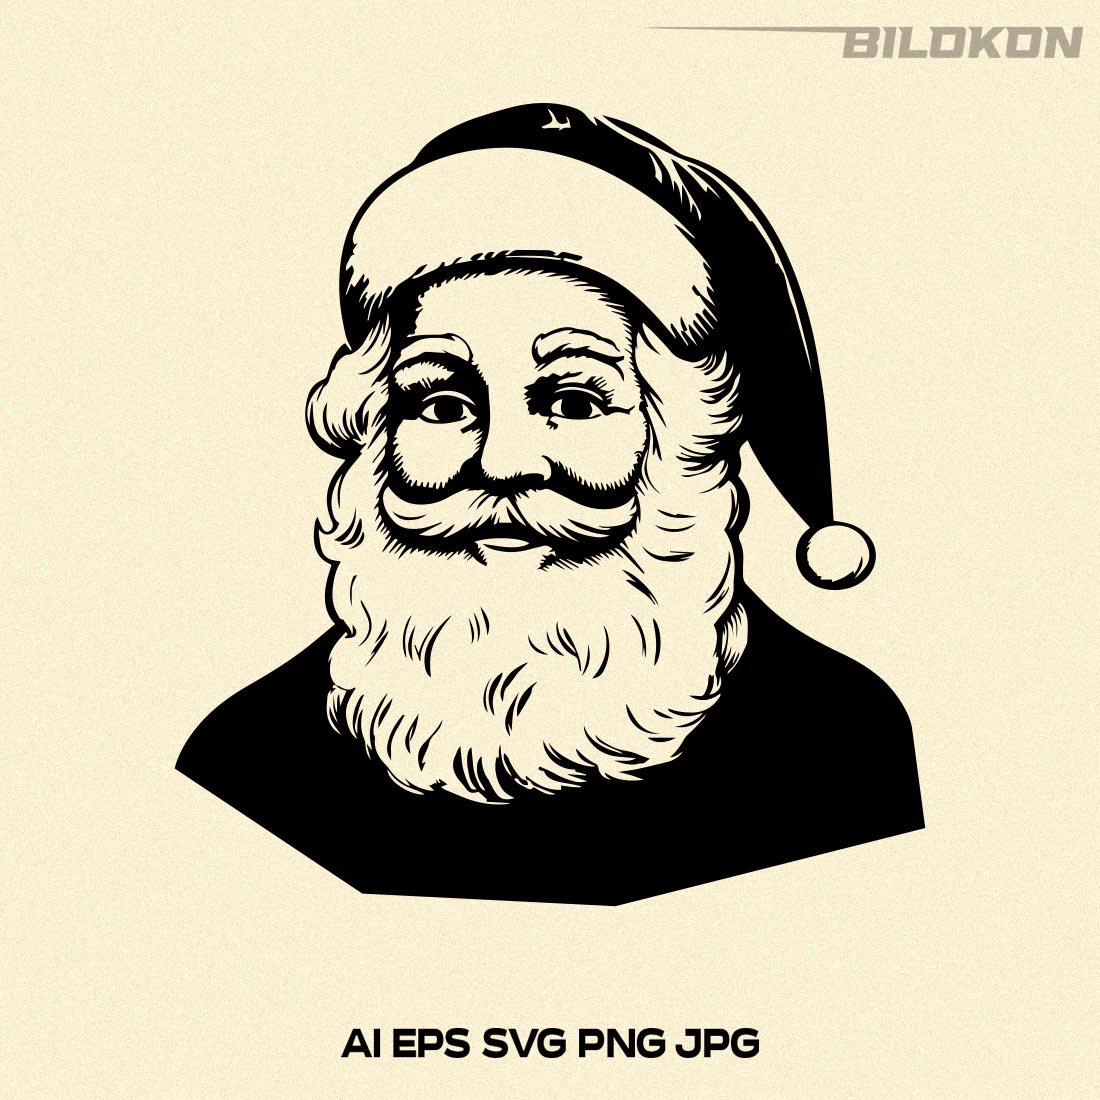 Retro Santa Claus, Santa Claus head SVG Vector cover image.